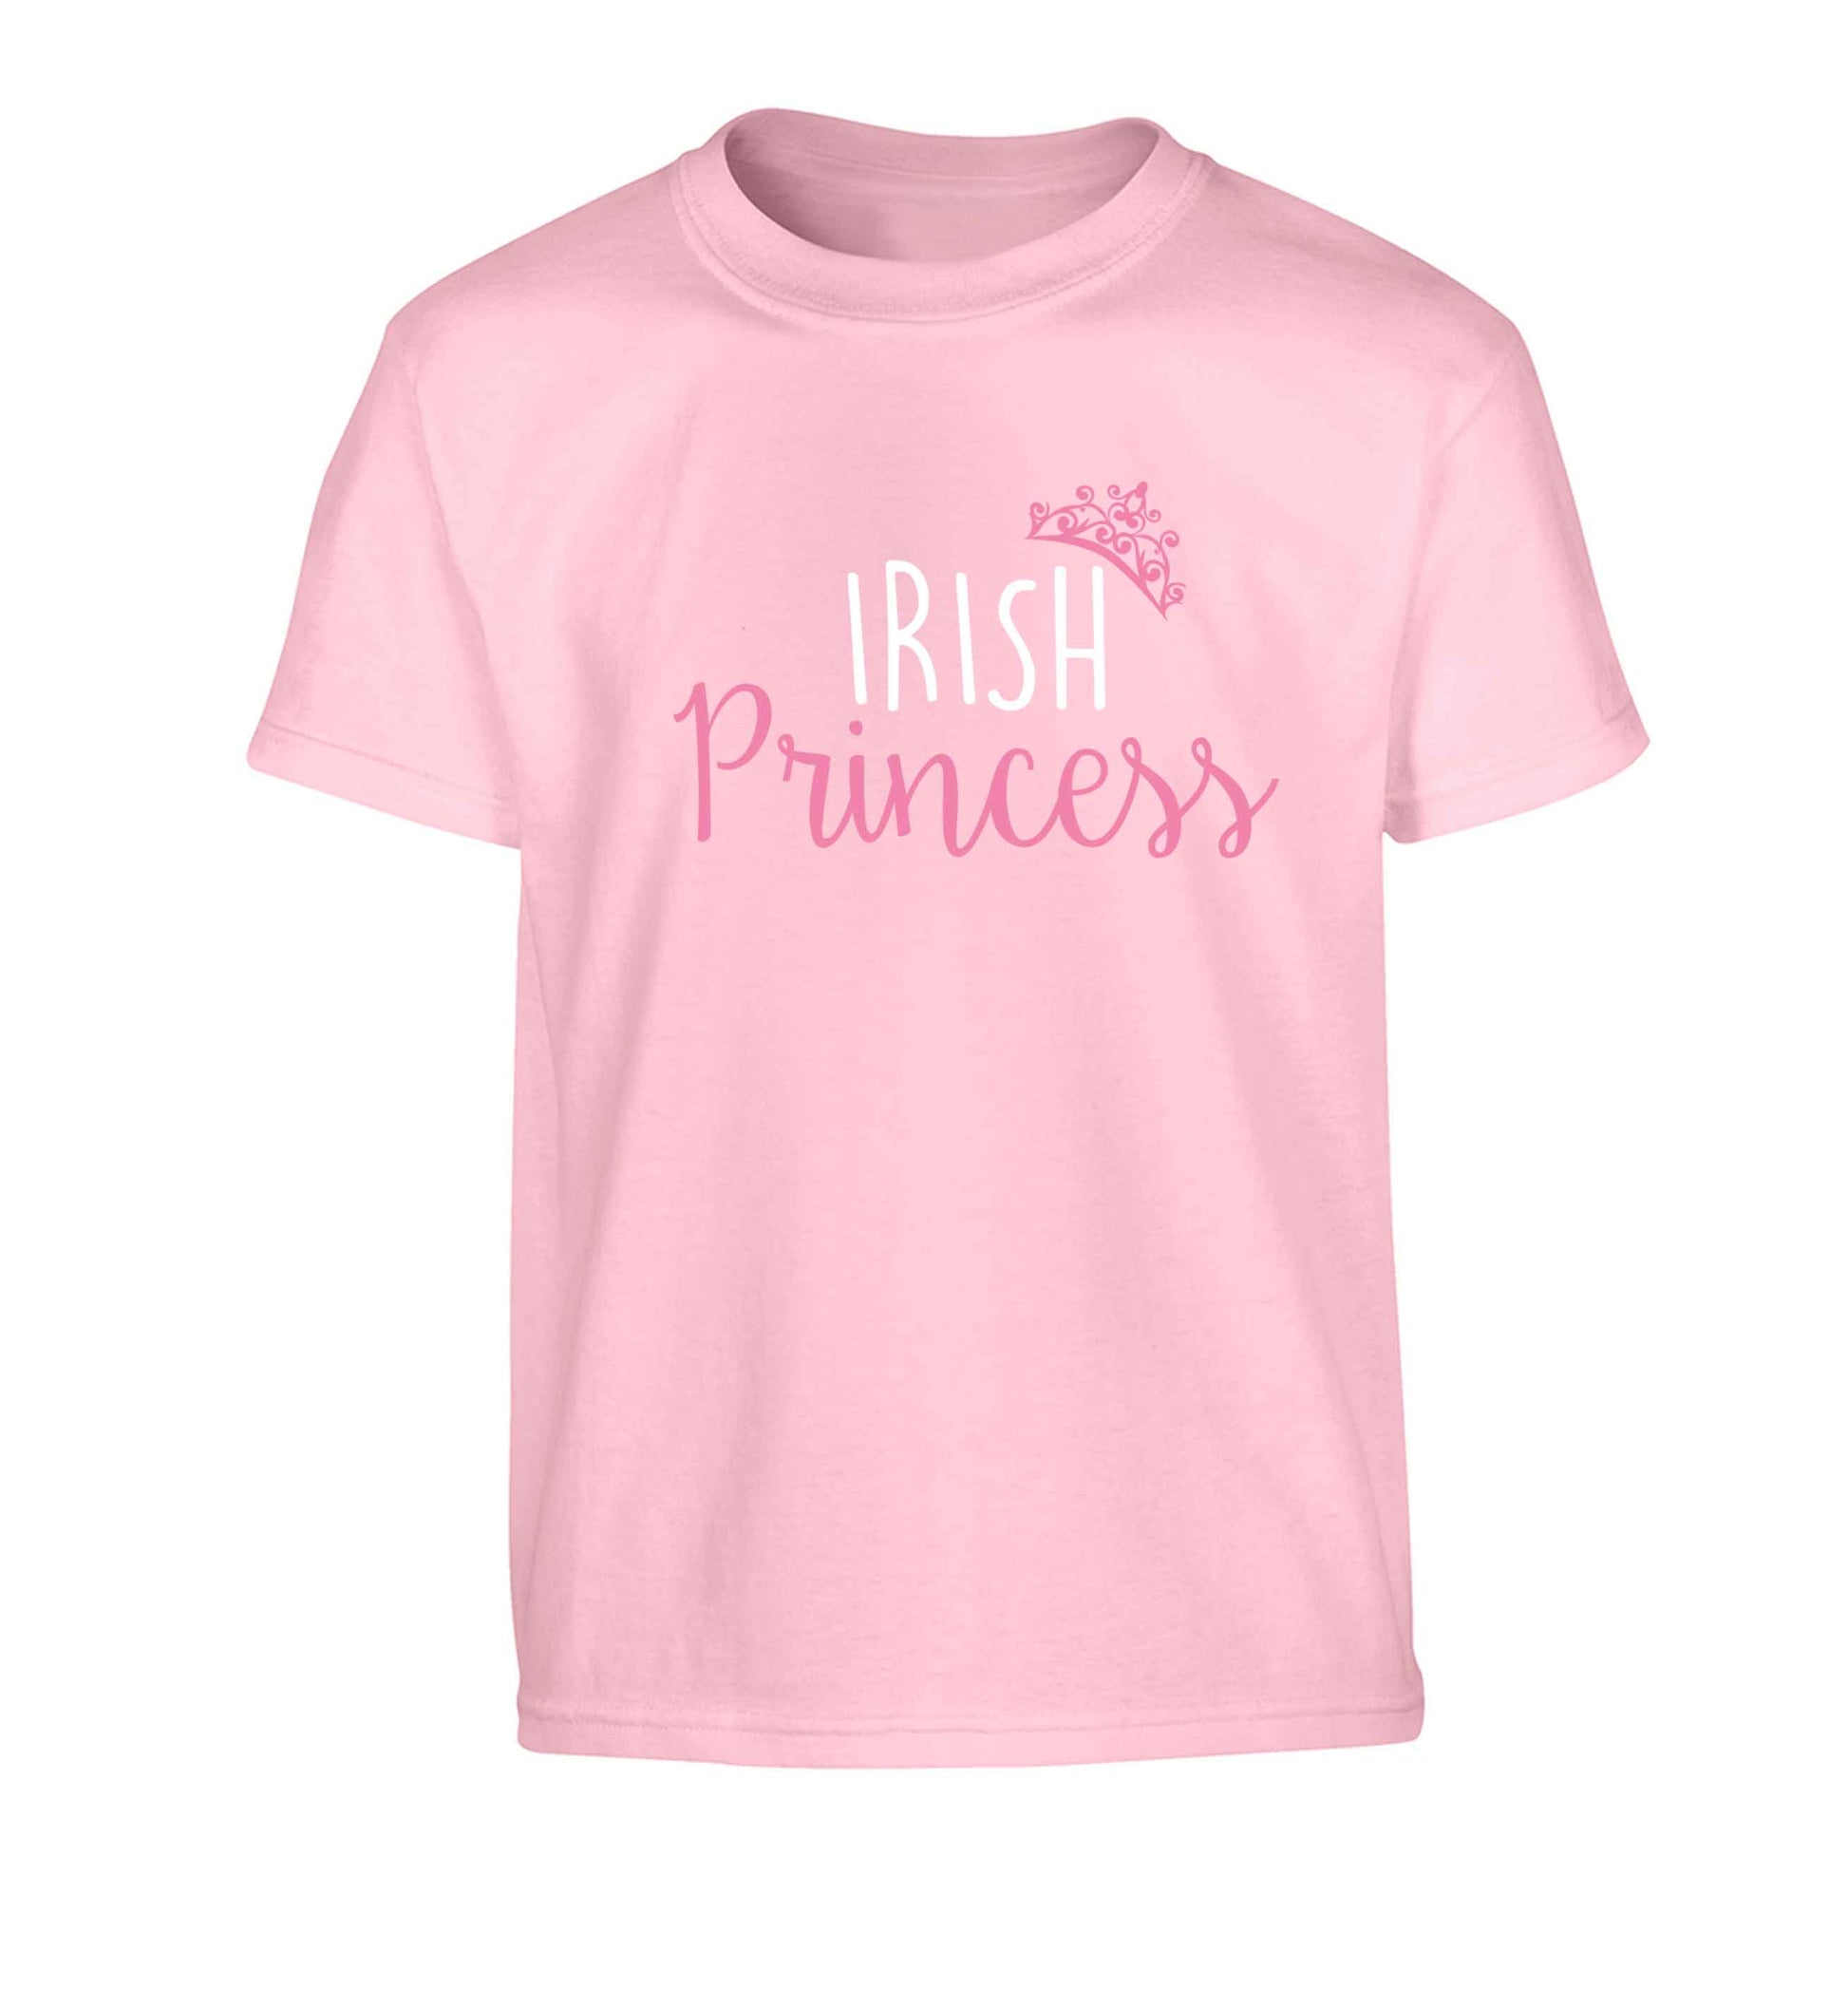 Irish princess Children's light pink Tshirt 12-13 Years